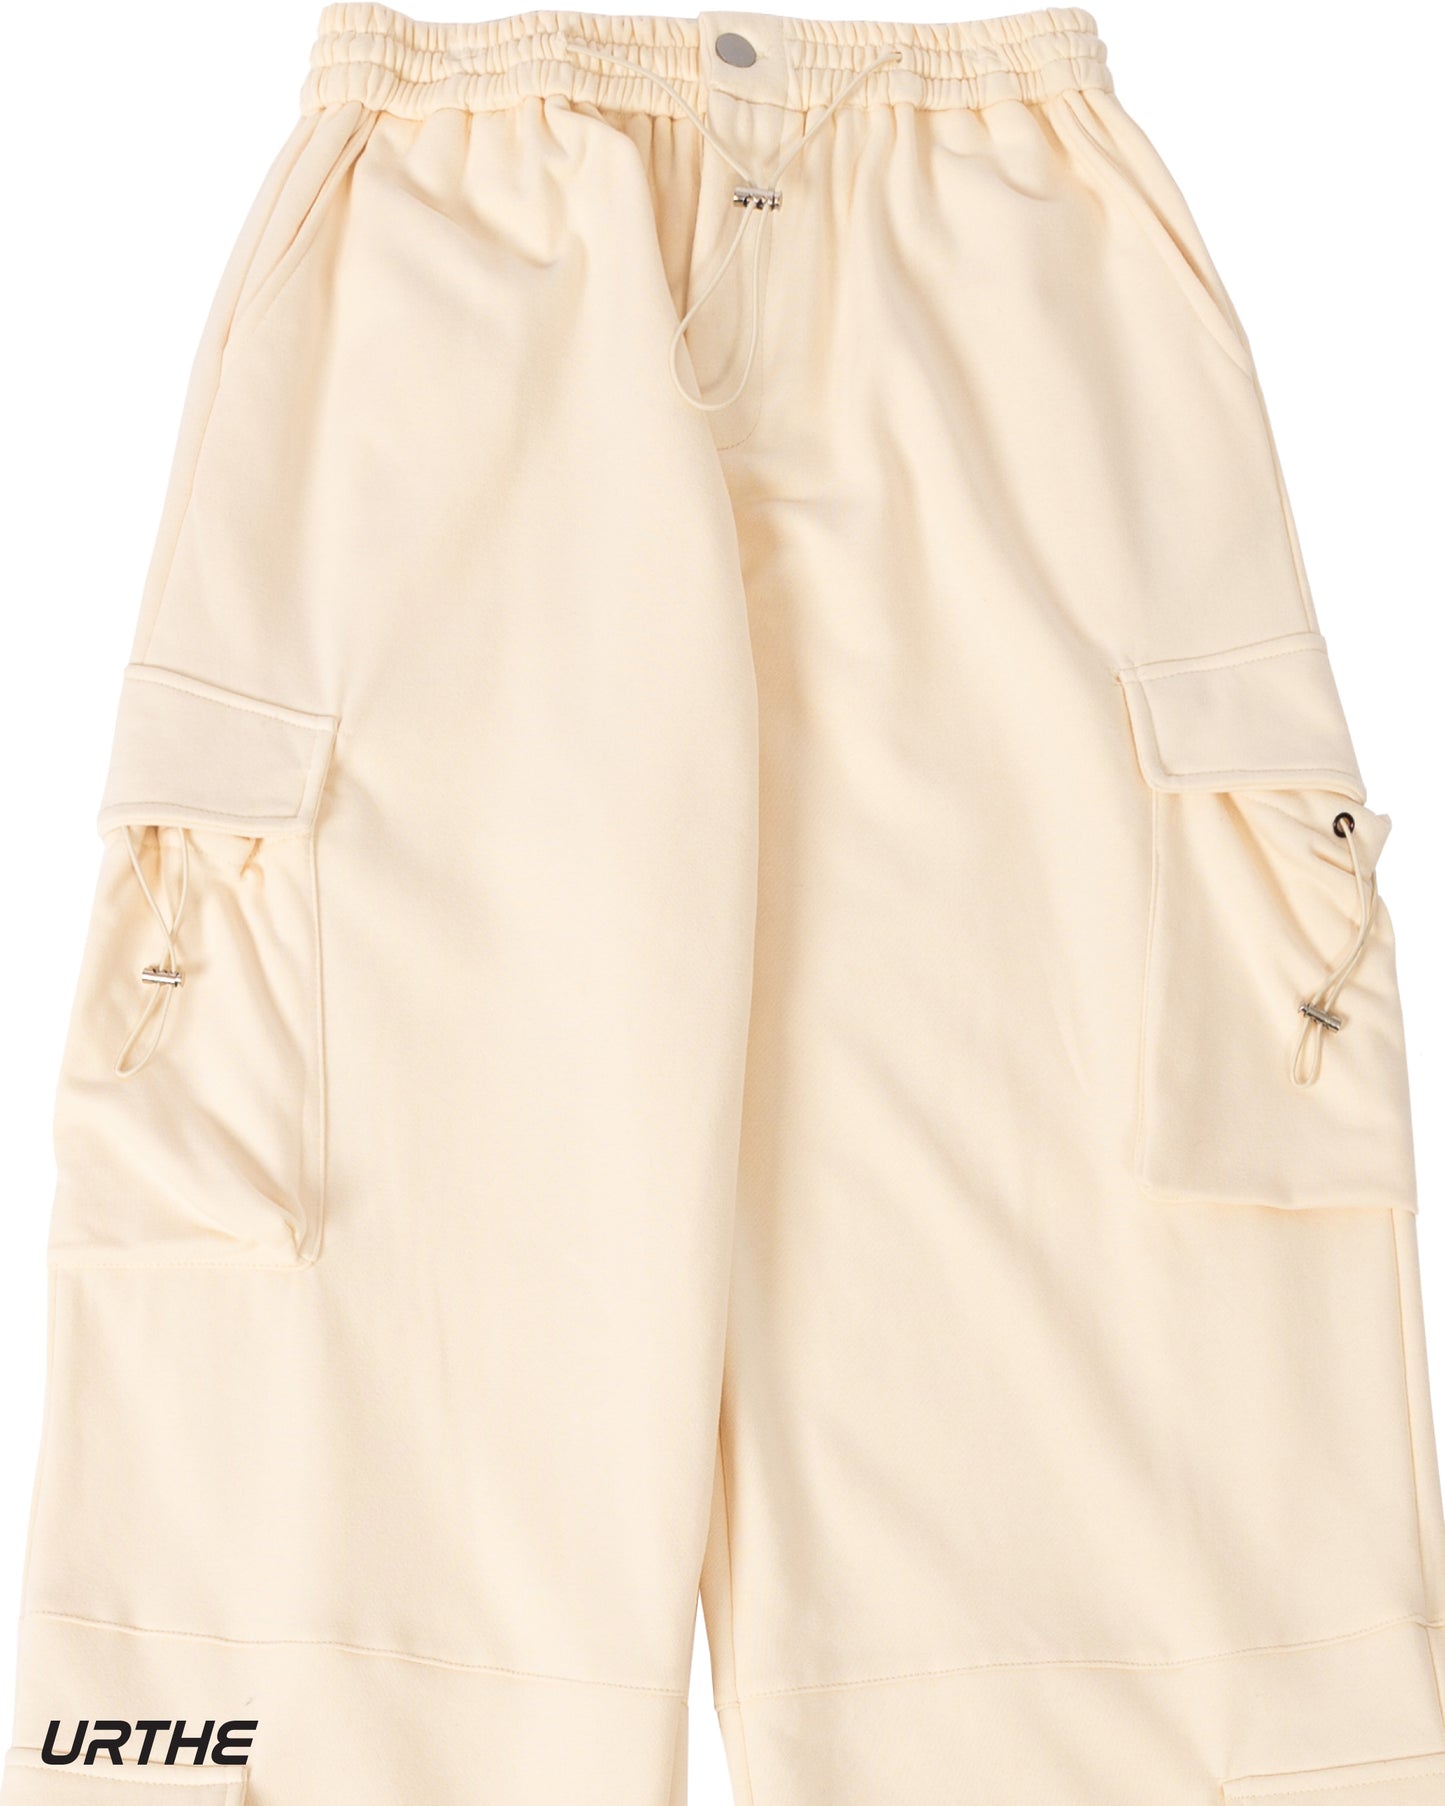 URTHE - กางเกงคาร์โก้ ขายาว กระเป๋า 4 ใบ รุ่น 4P 2.0